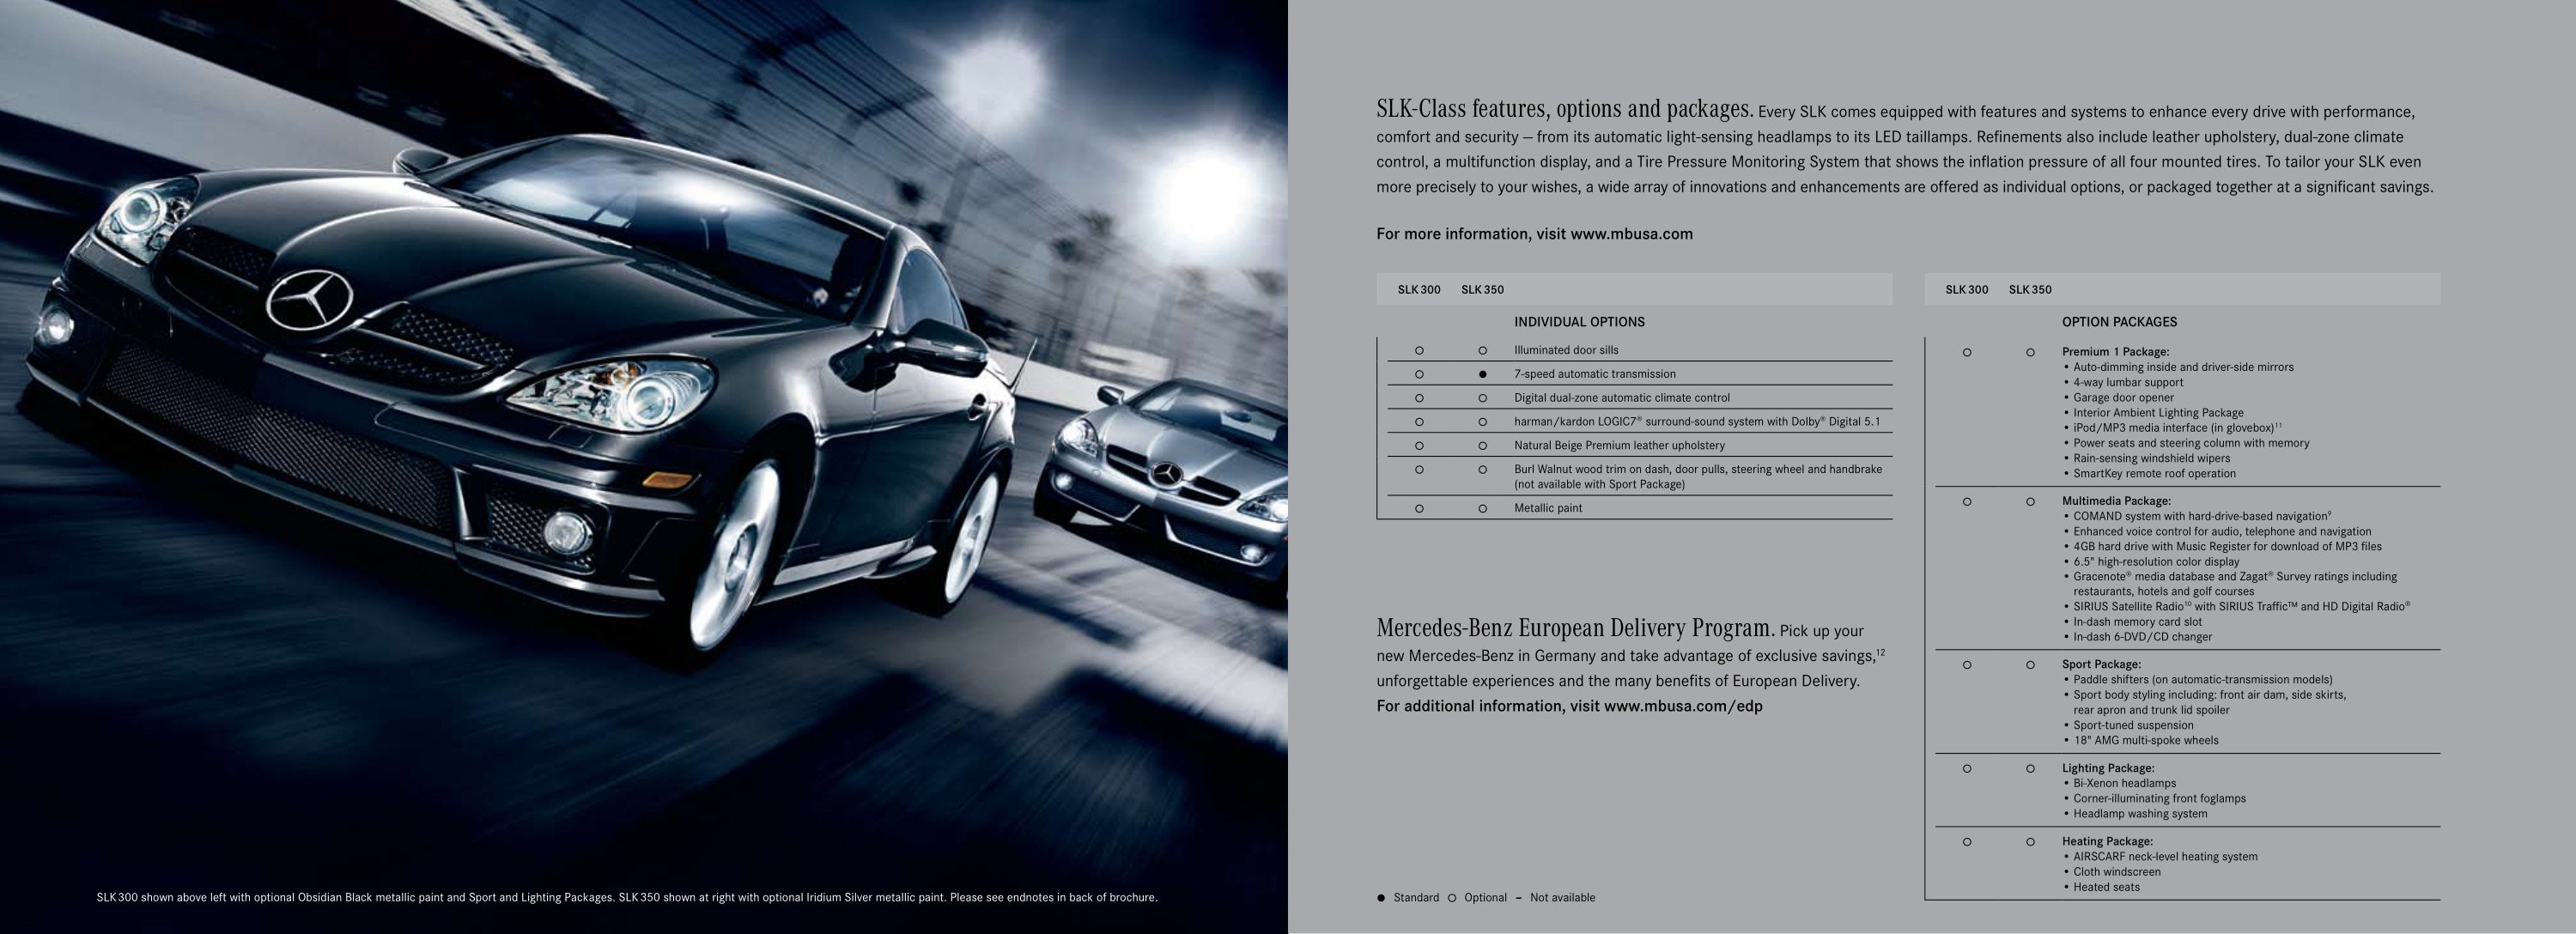 2010 Mercedes-Benz SLK Brochure Page 2